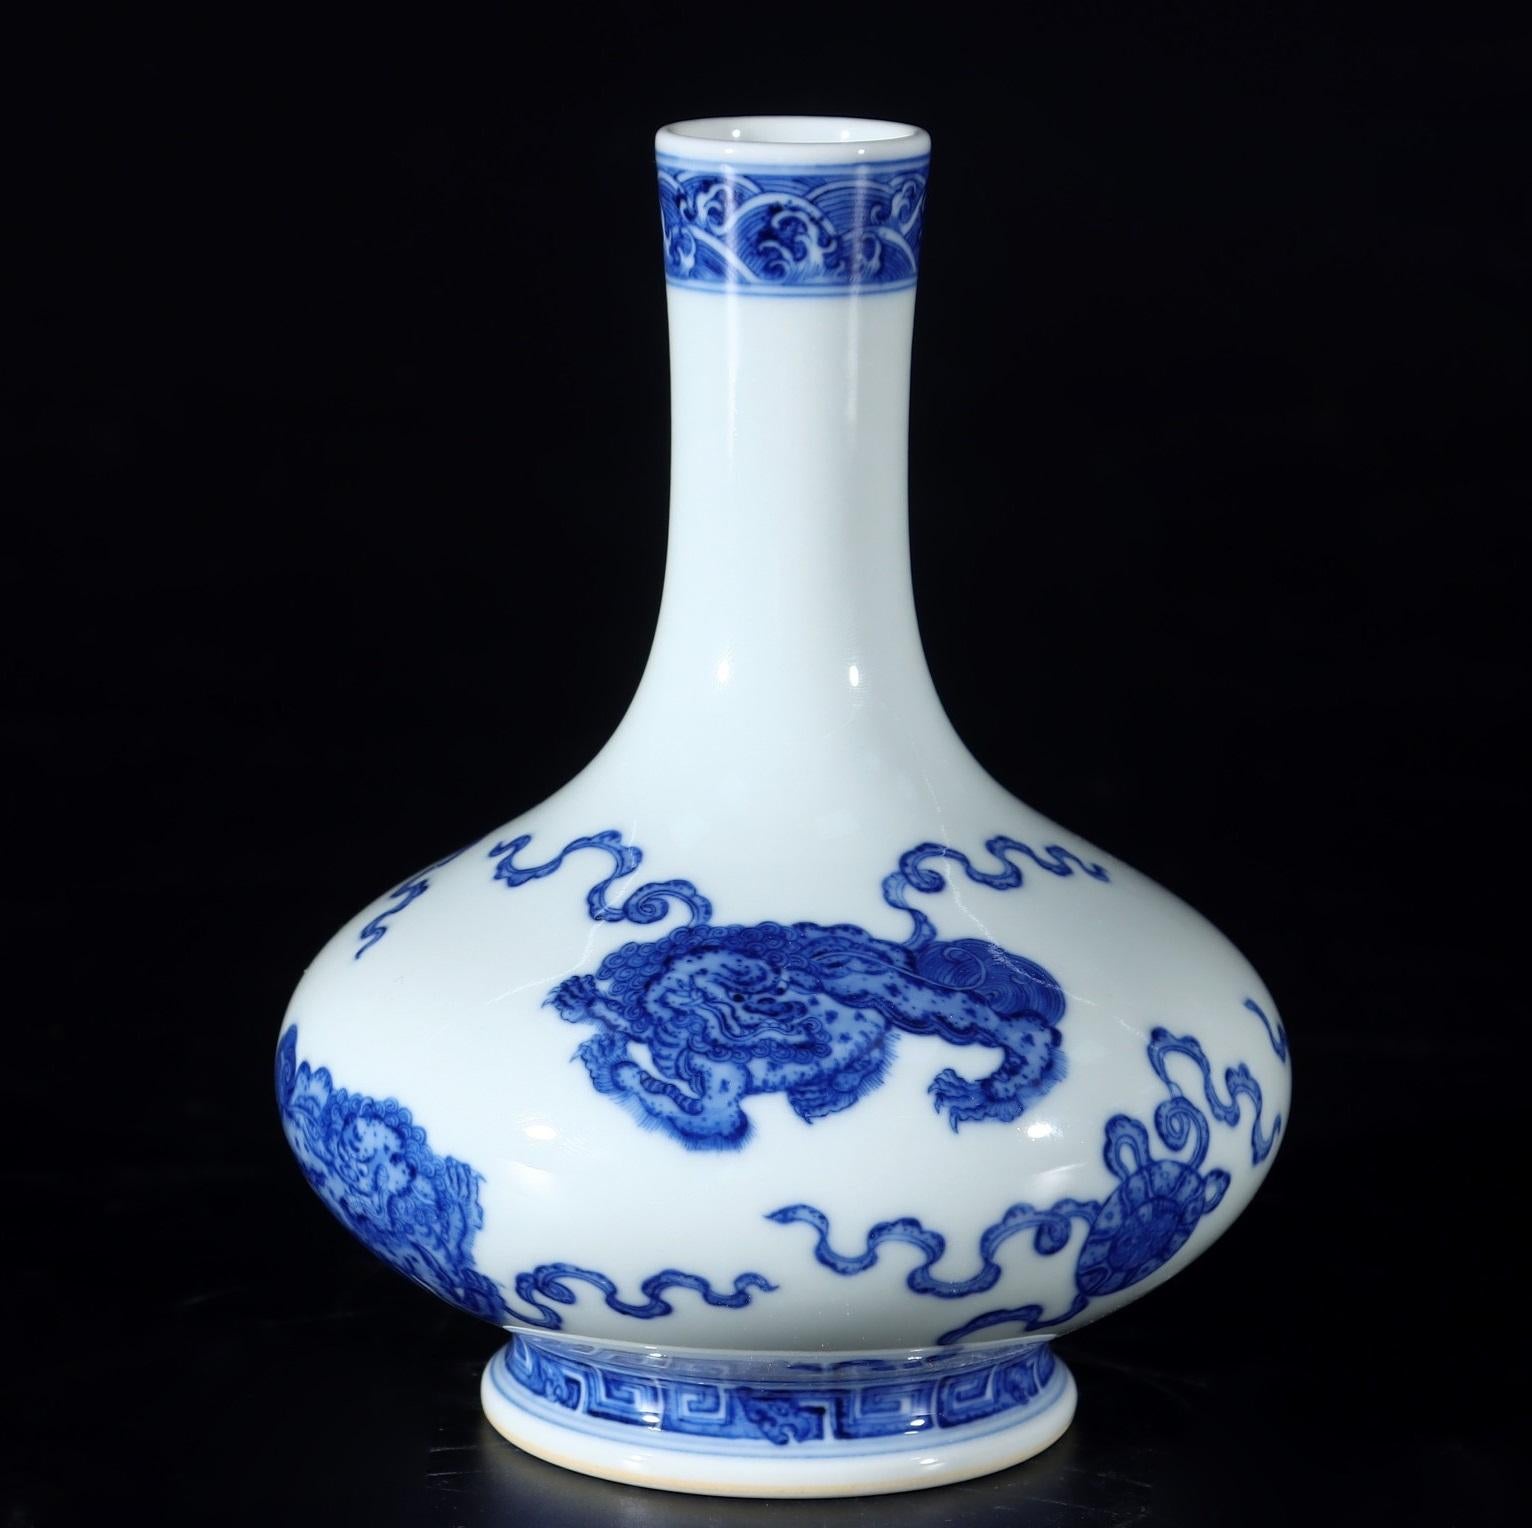 Ce vase en porcelaine bleu blanc avec lions, fabriqué à la main, est une pièce de collection vraiment unique et spéciale, fabriquée en Chine. 

Dans la culture chinoise, les lions symbolisent le pouvoir, la protection et les bons auspices. Ils sont